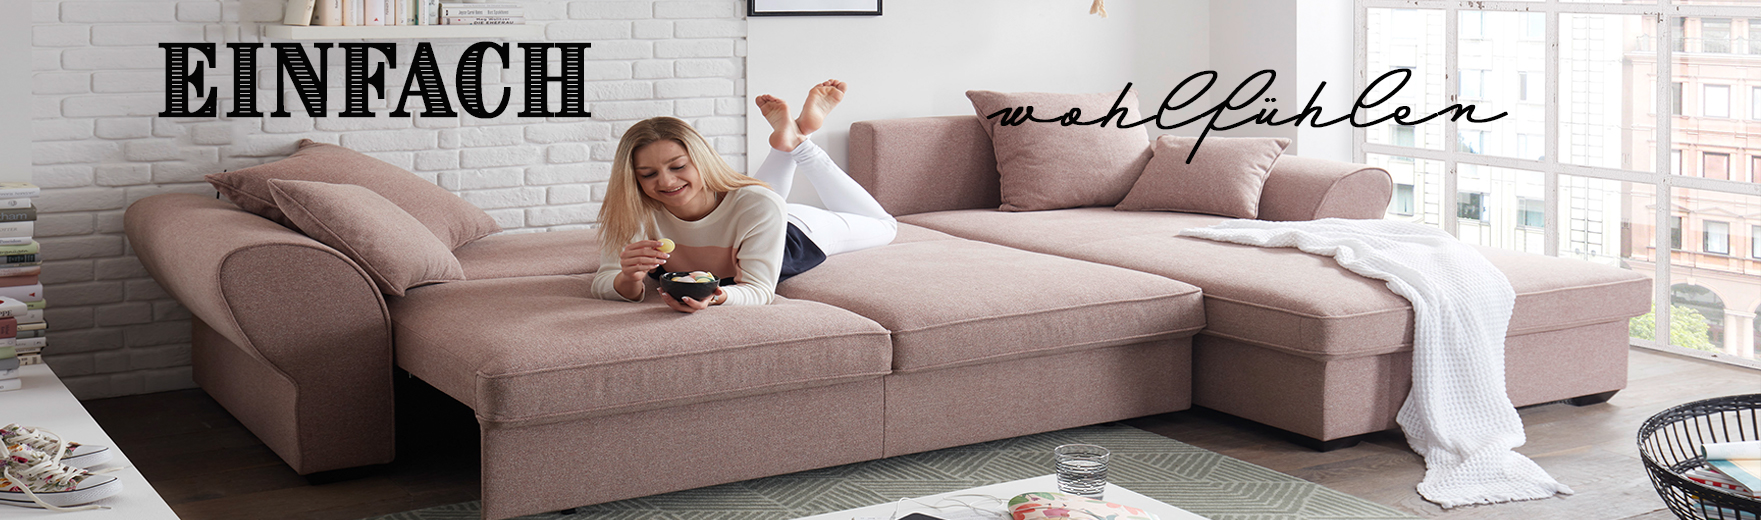 Sitzen, Liegen, Leben – Ratgeber für Sofa & Couch